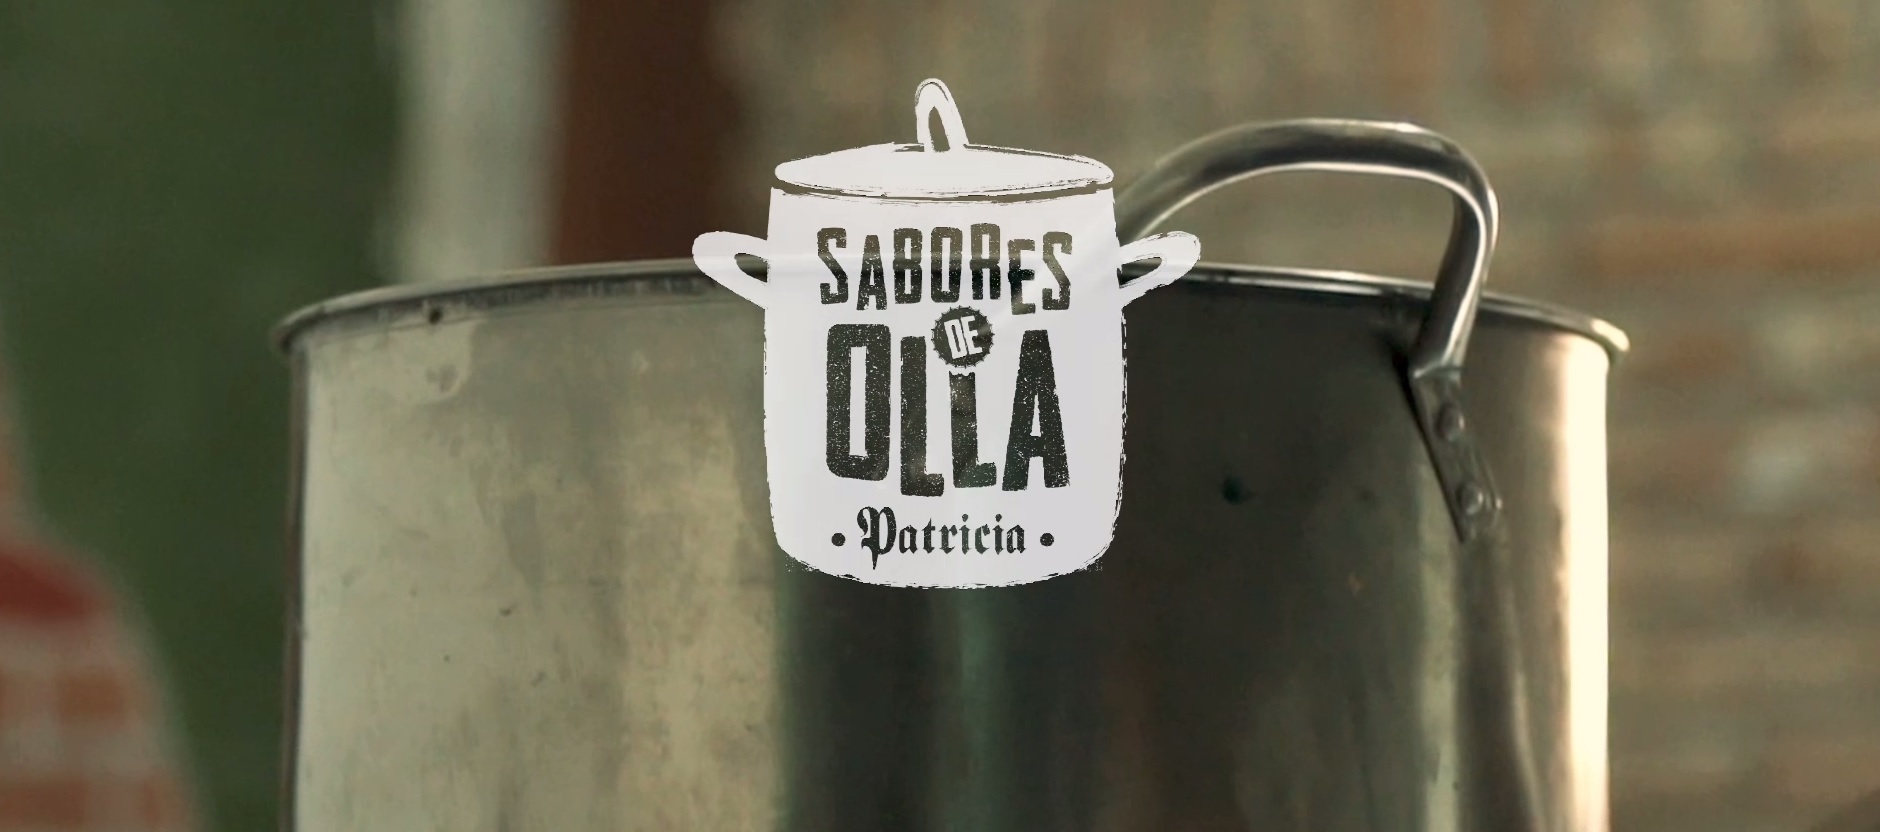 Cerveza Patricia duplicará las donaciones de la campaña solidaria «Sabores de Olla»